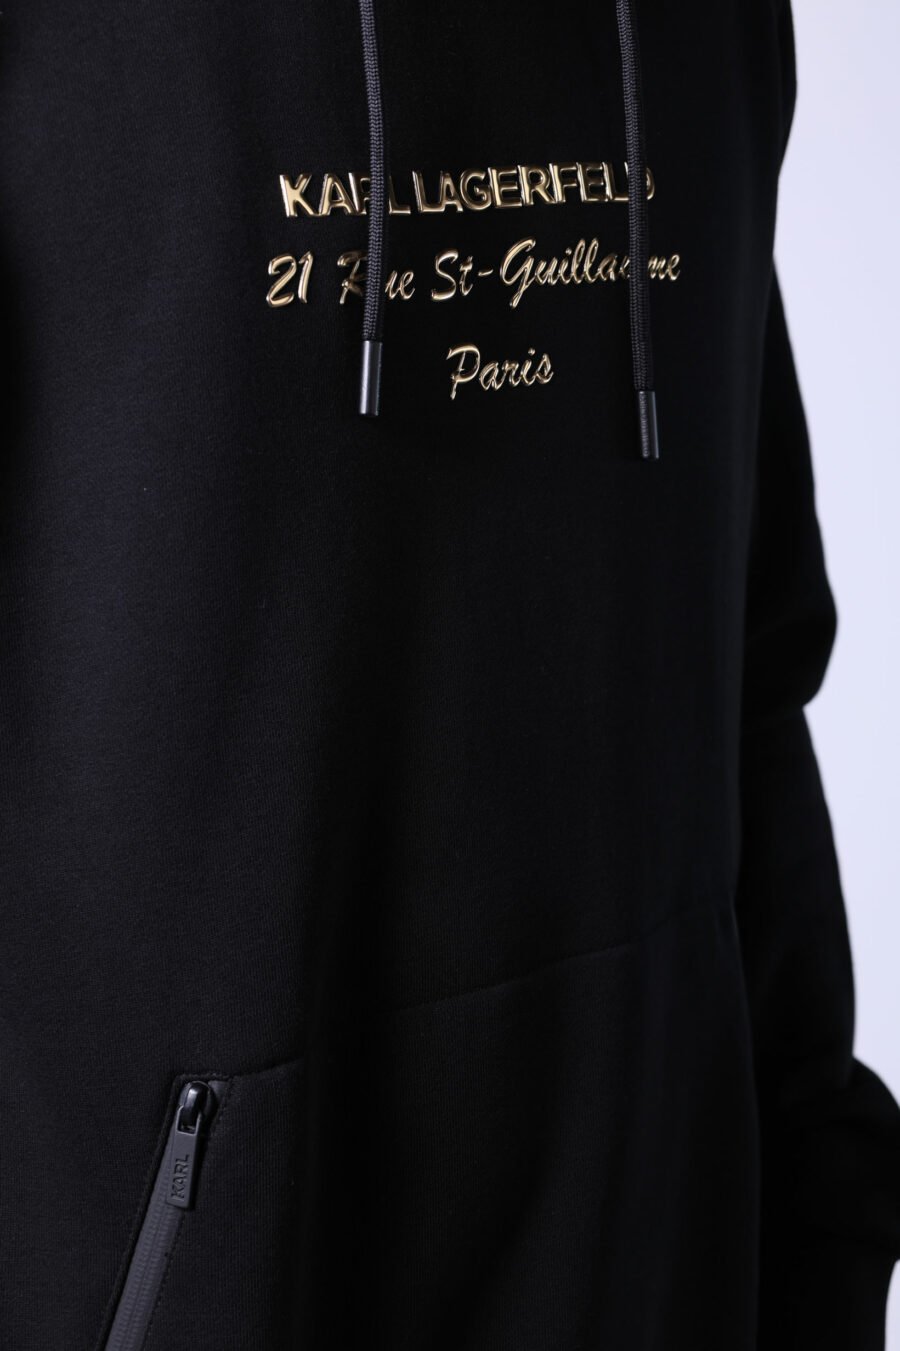 Sweat à capuche noir avec logo "rue st guillaume" en lettres dorées - Untitled Catalog 05729